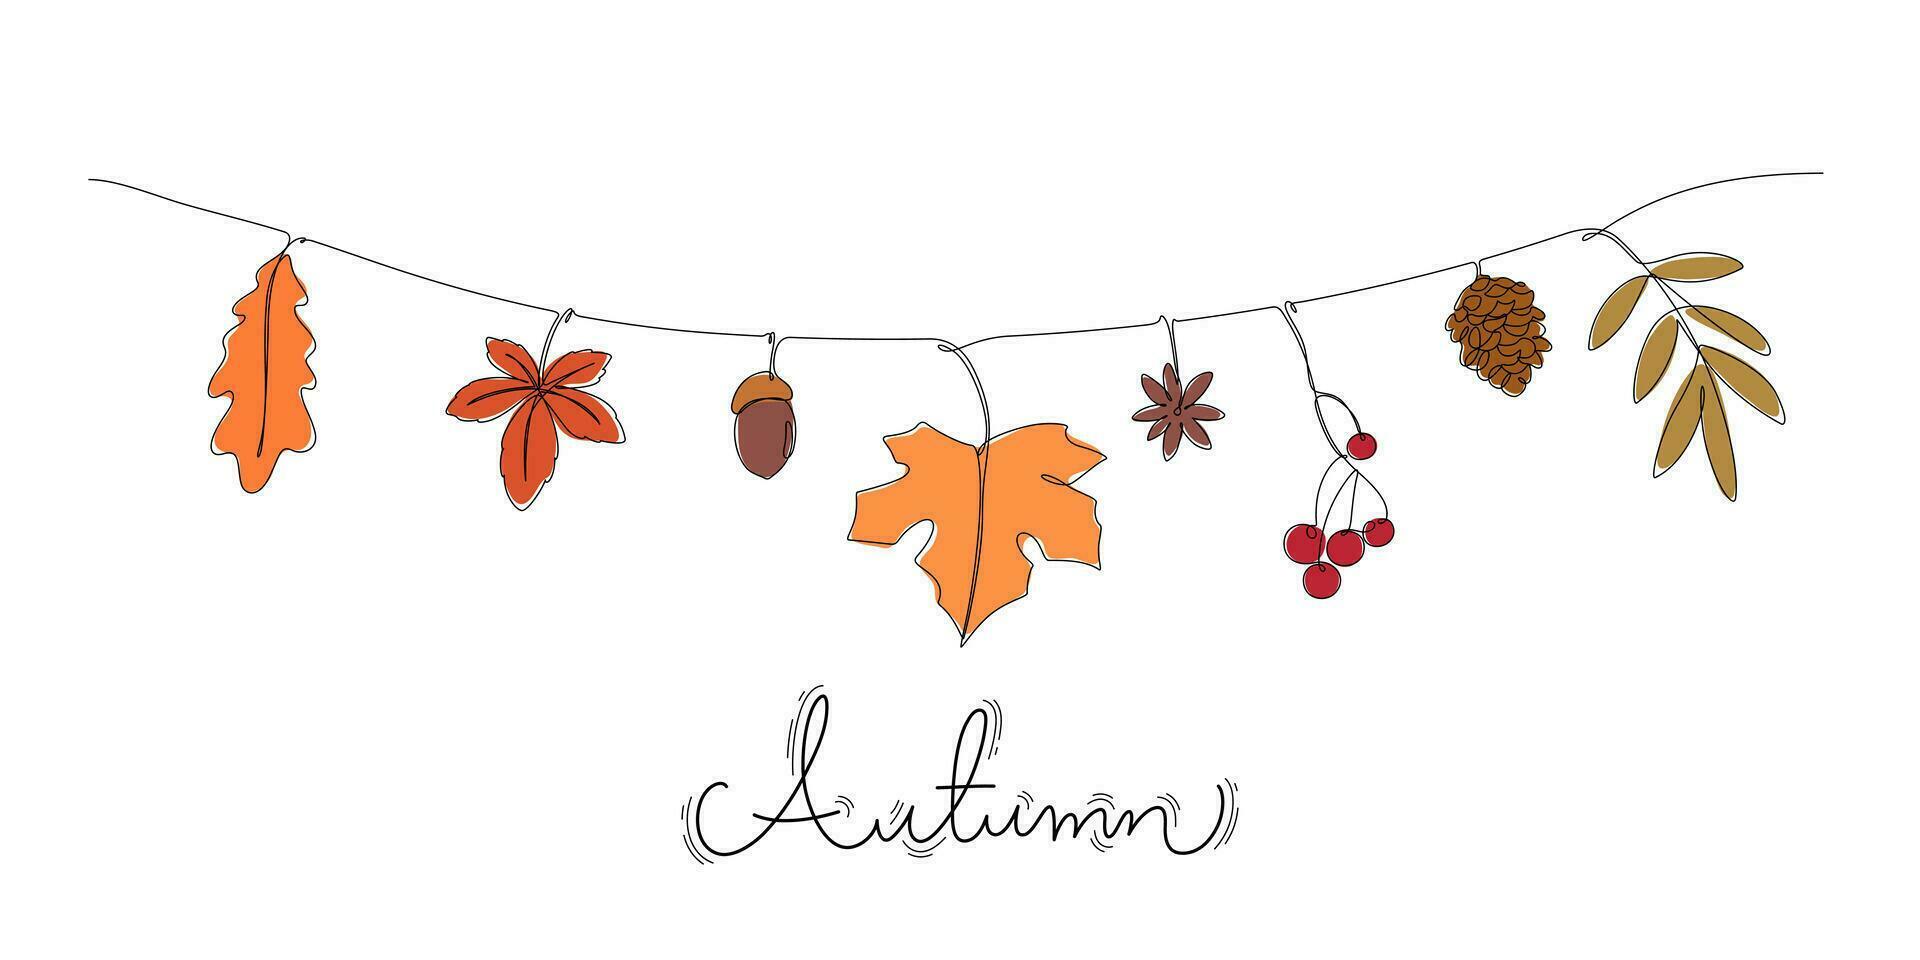 kontinuierlich Linie Zeichnung farbig von Herbst Blätter Mauer dekoriert hängend Zeichenfolge Vektor